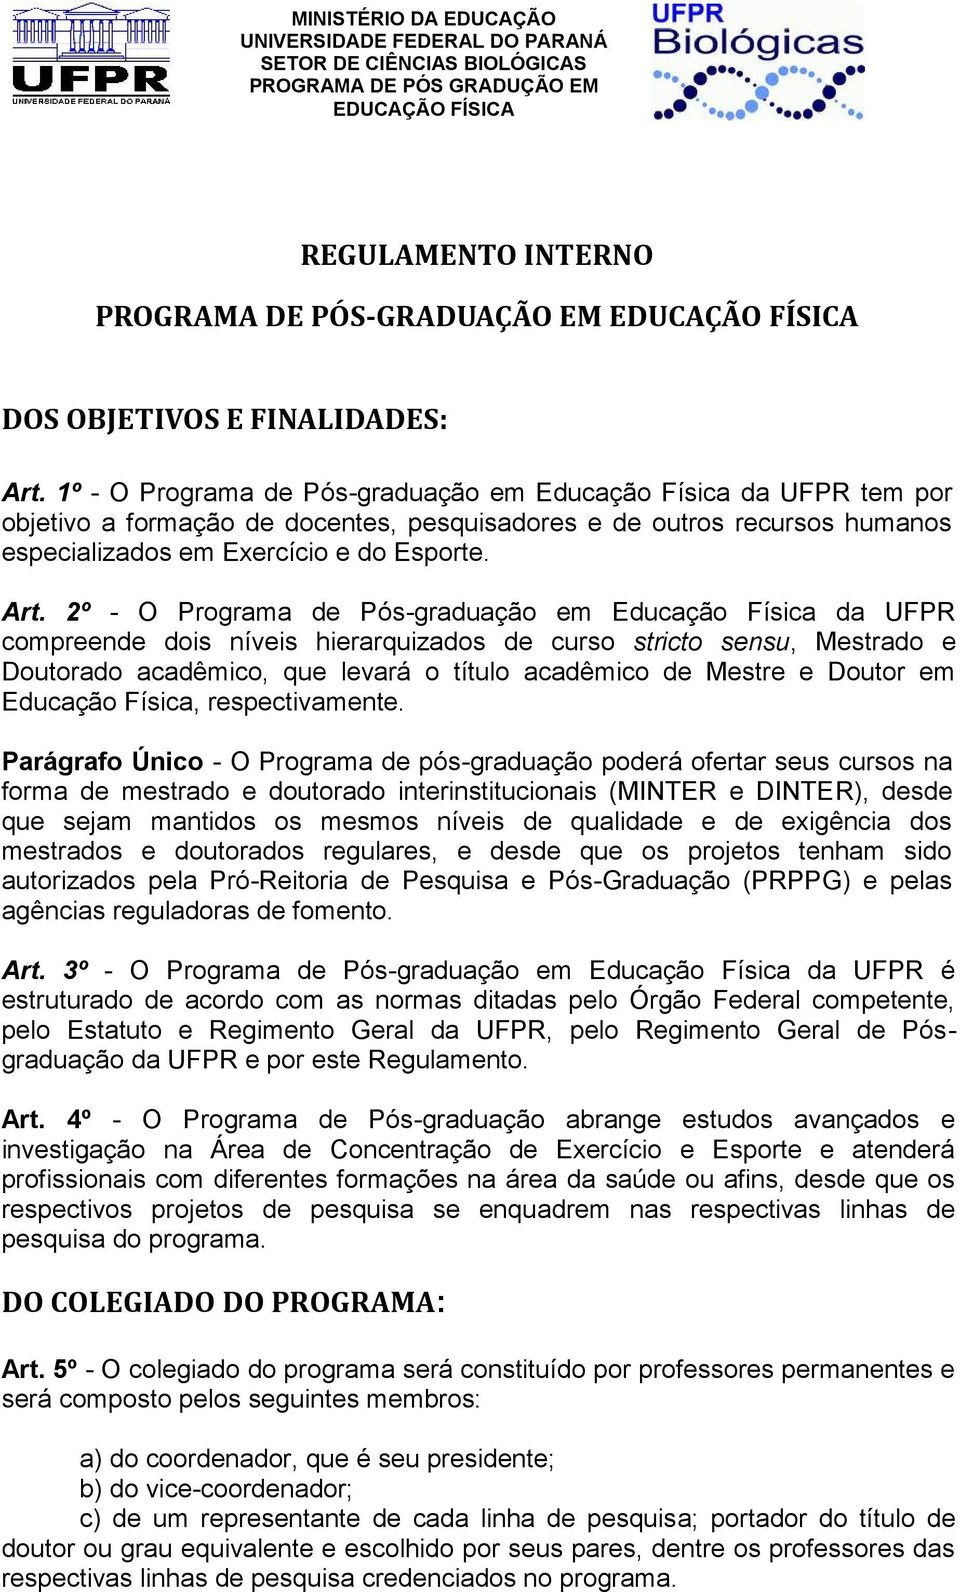 2º - O Programa de Pós-graduação em Educação Física da UFPR compreende dois níveis hierarquizados de curso stricto sensu, Mestrado e Doutorado acadêmico, que levará o título acadêmico de Mestre e